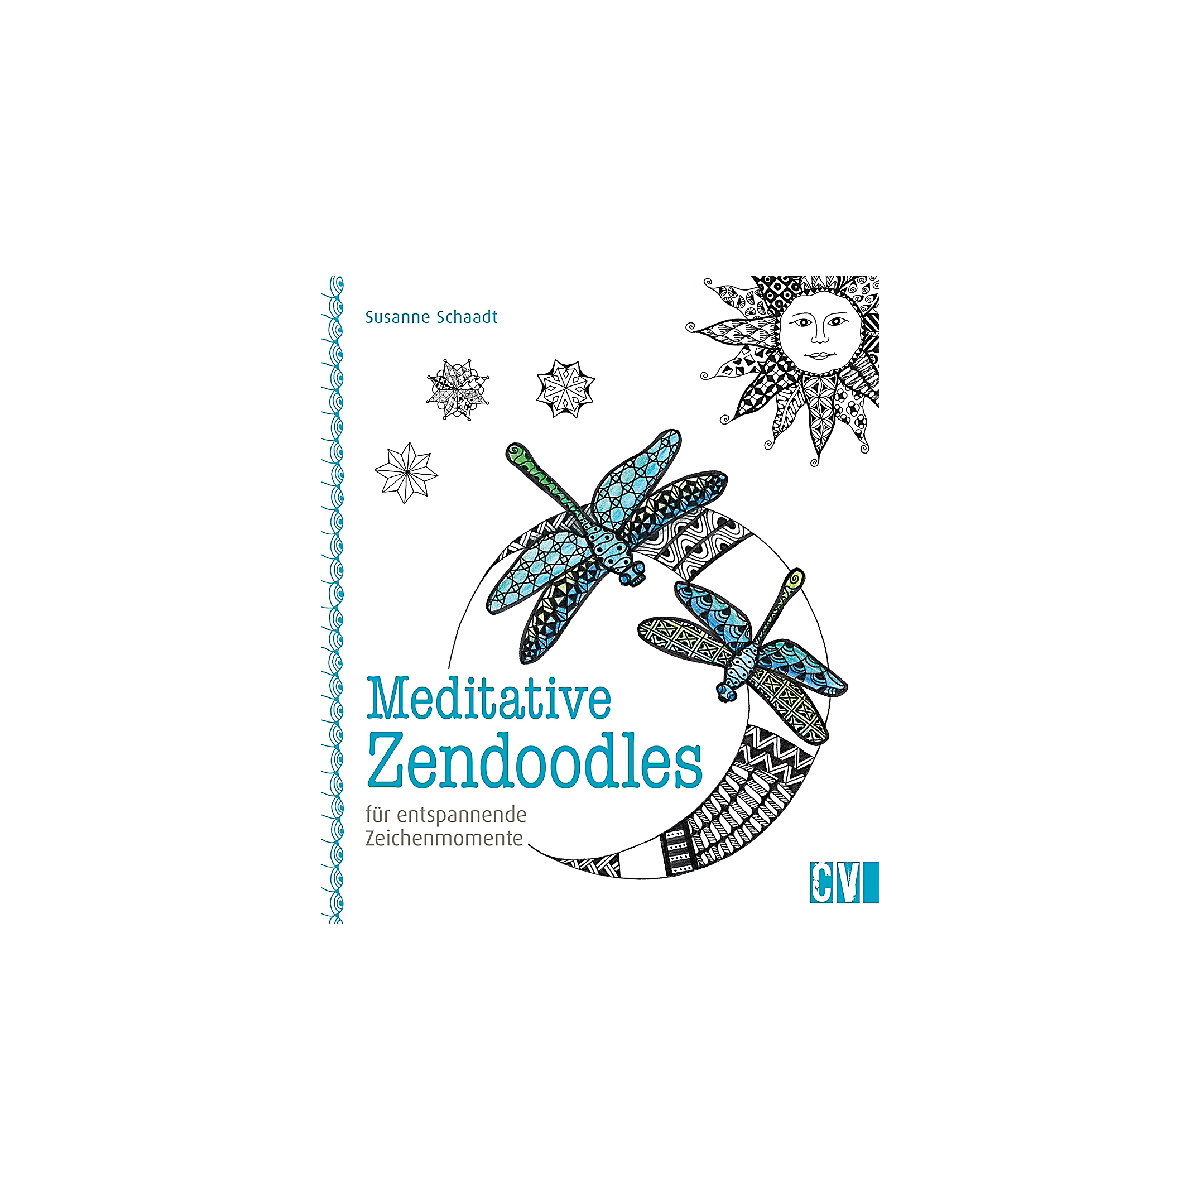 Meditative Zendoodles